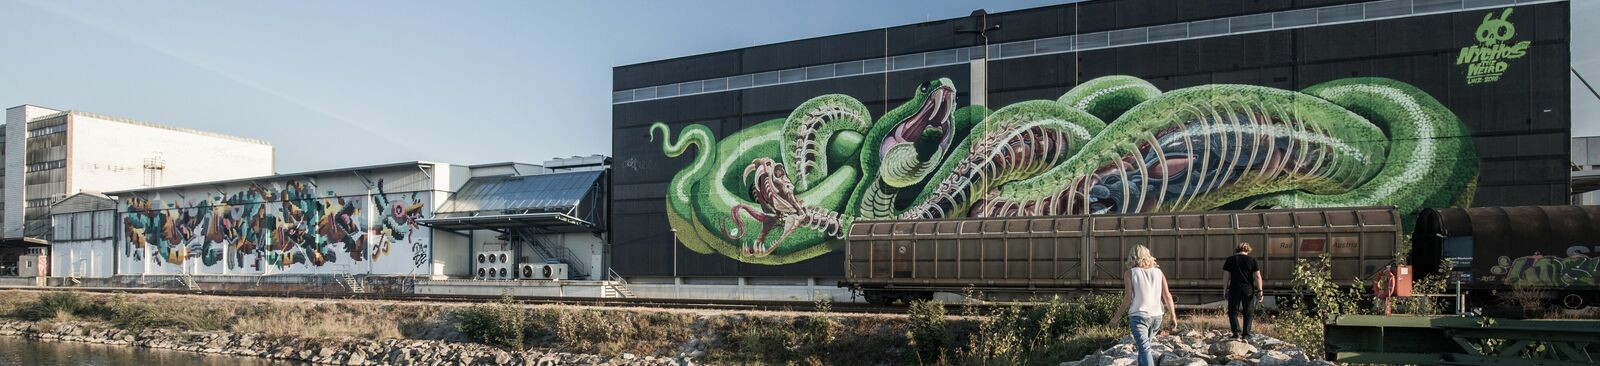 Mural Harbor: Graffiti-Kunst von Nychos